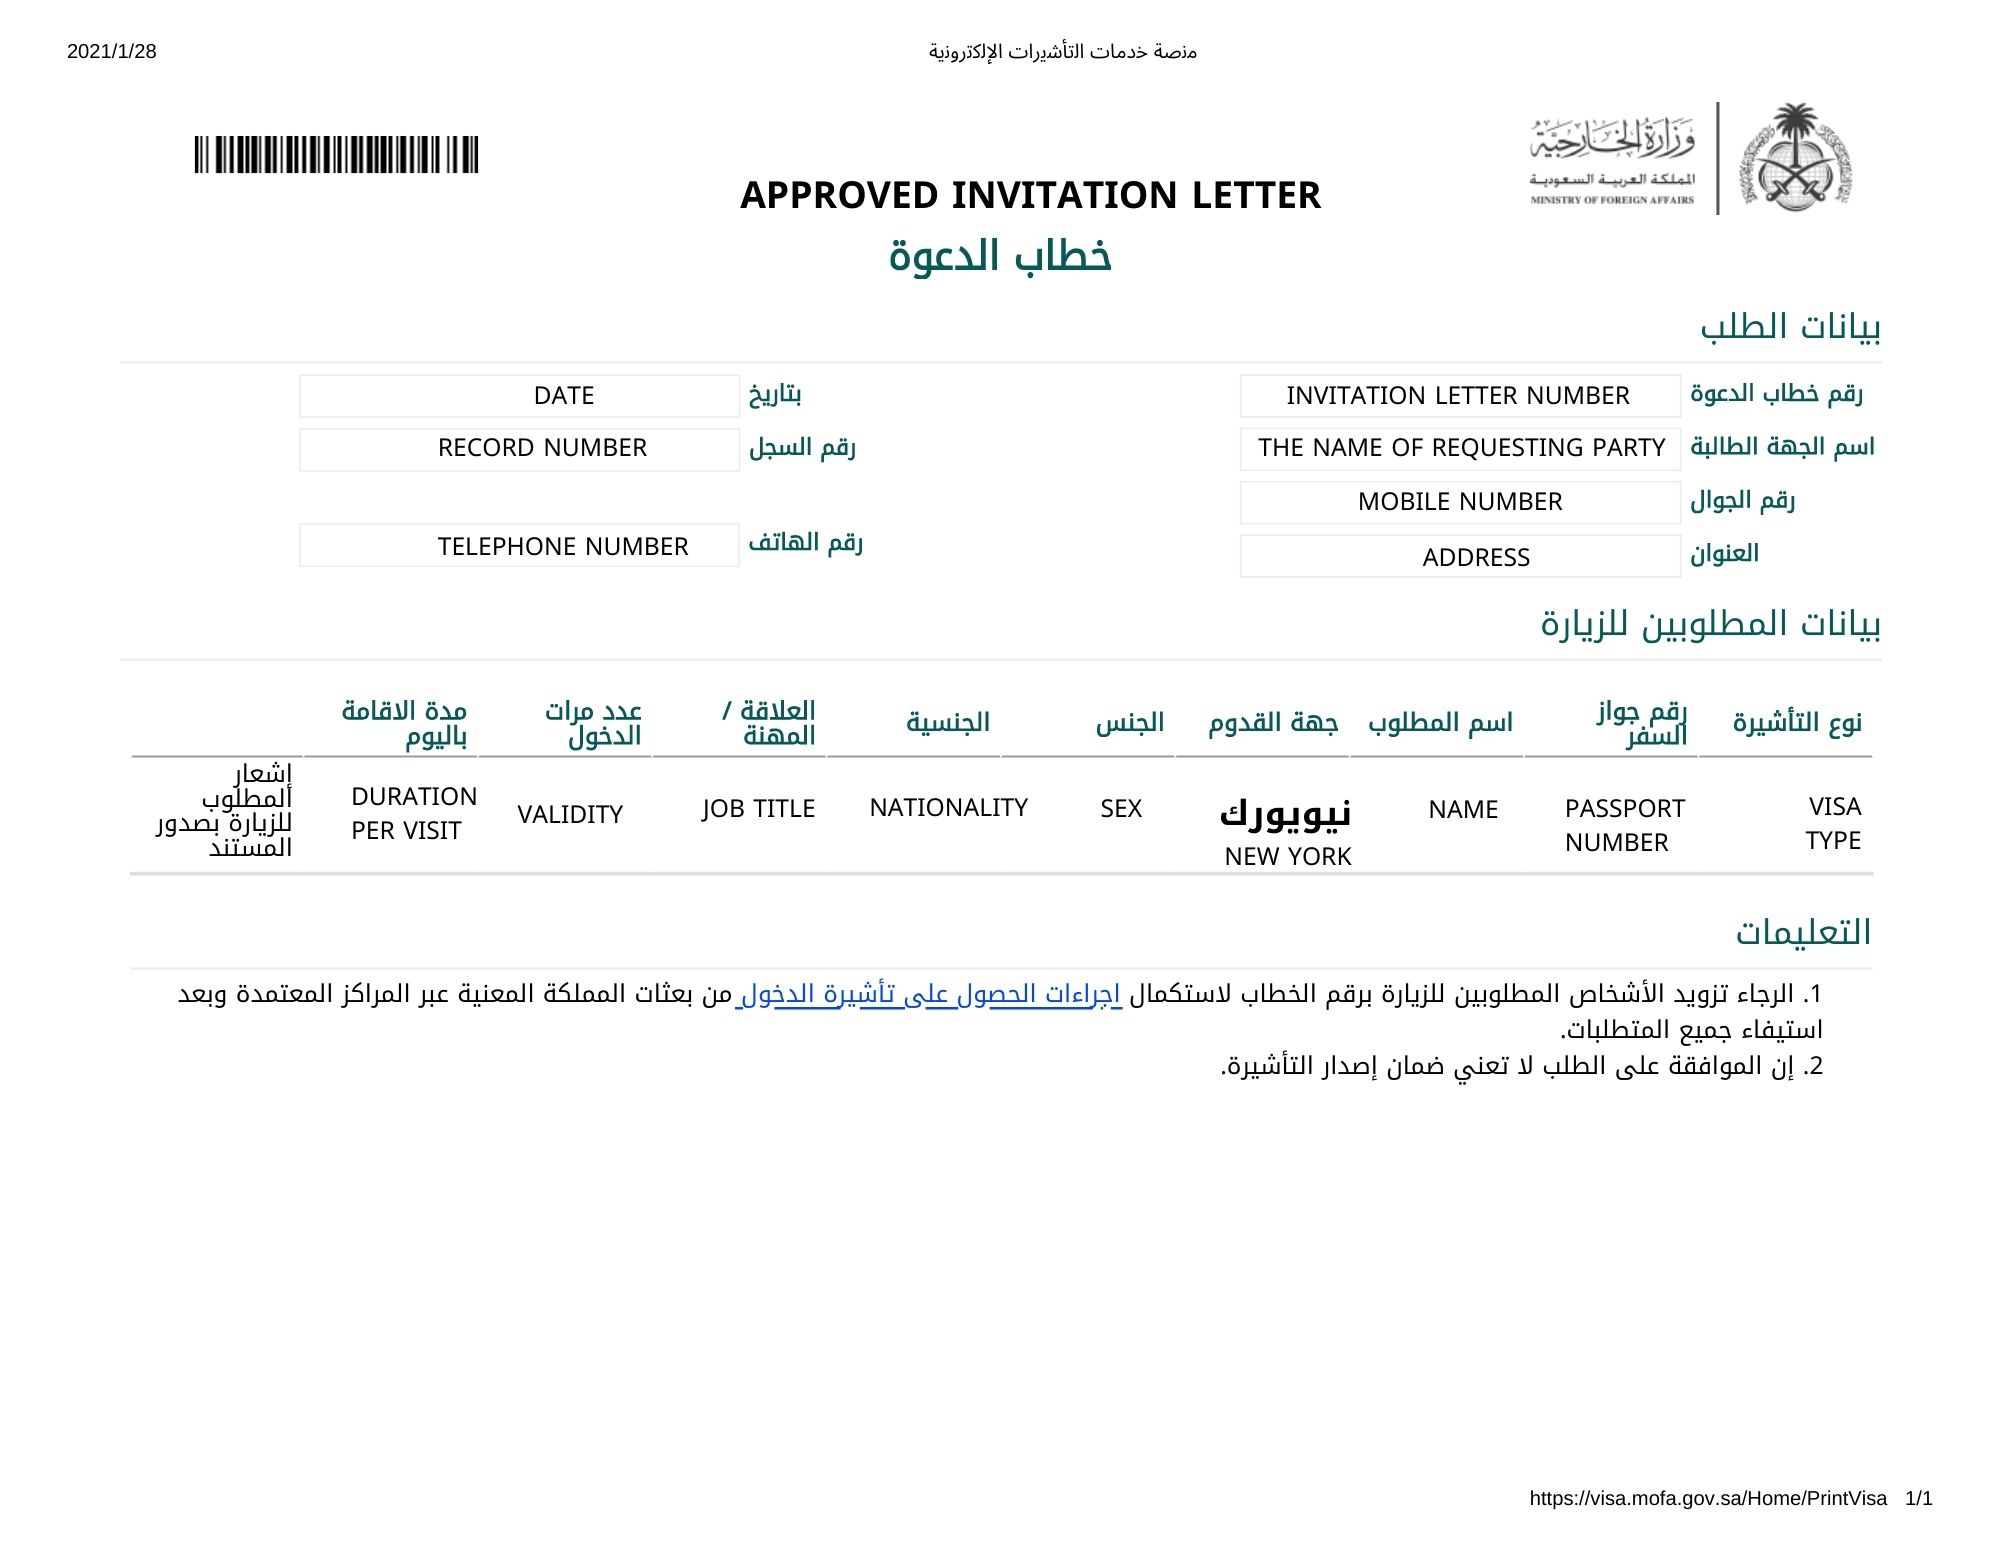 new visit visa rules saudi arabia 2022